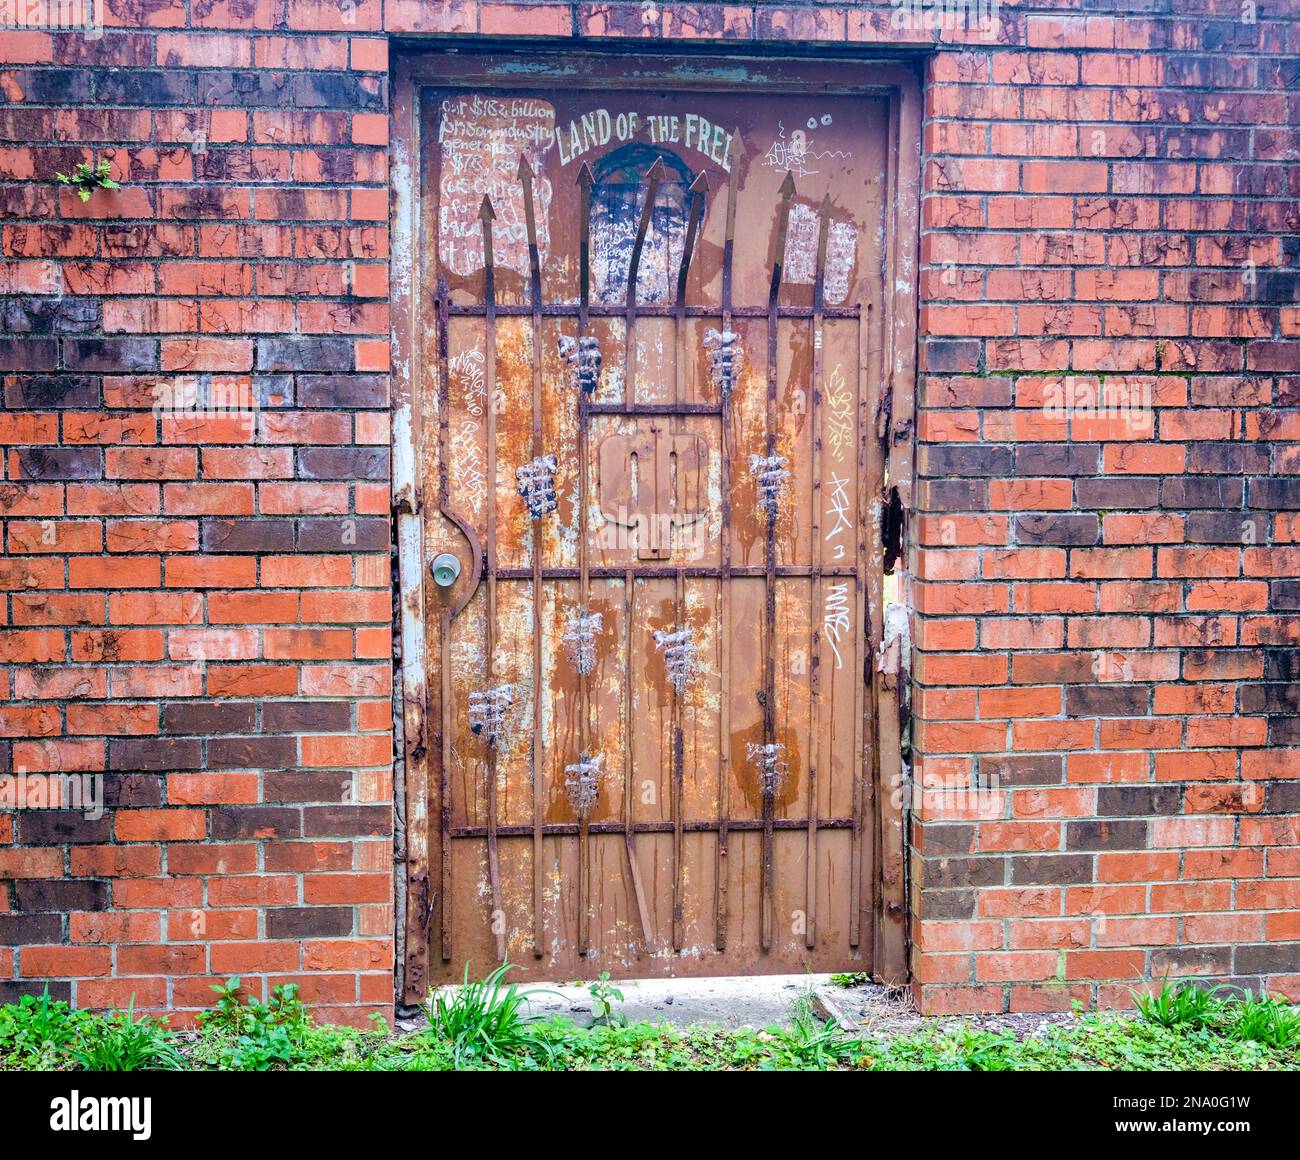 NUEVA ORLEANS, LA, EE.UU. - 2 DE FEBRERO de 2023: Puerta de metal oxidado y puerta de seguridad y una pared de ladrillo y una improvisación artística de un hombre detrás de las rejas Foto de stock